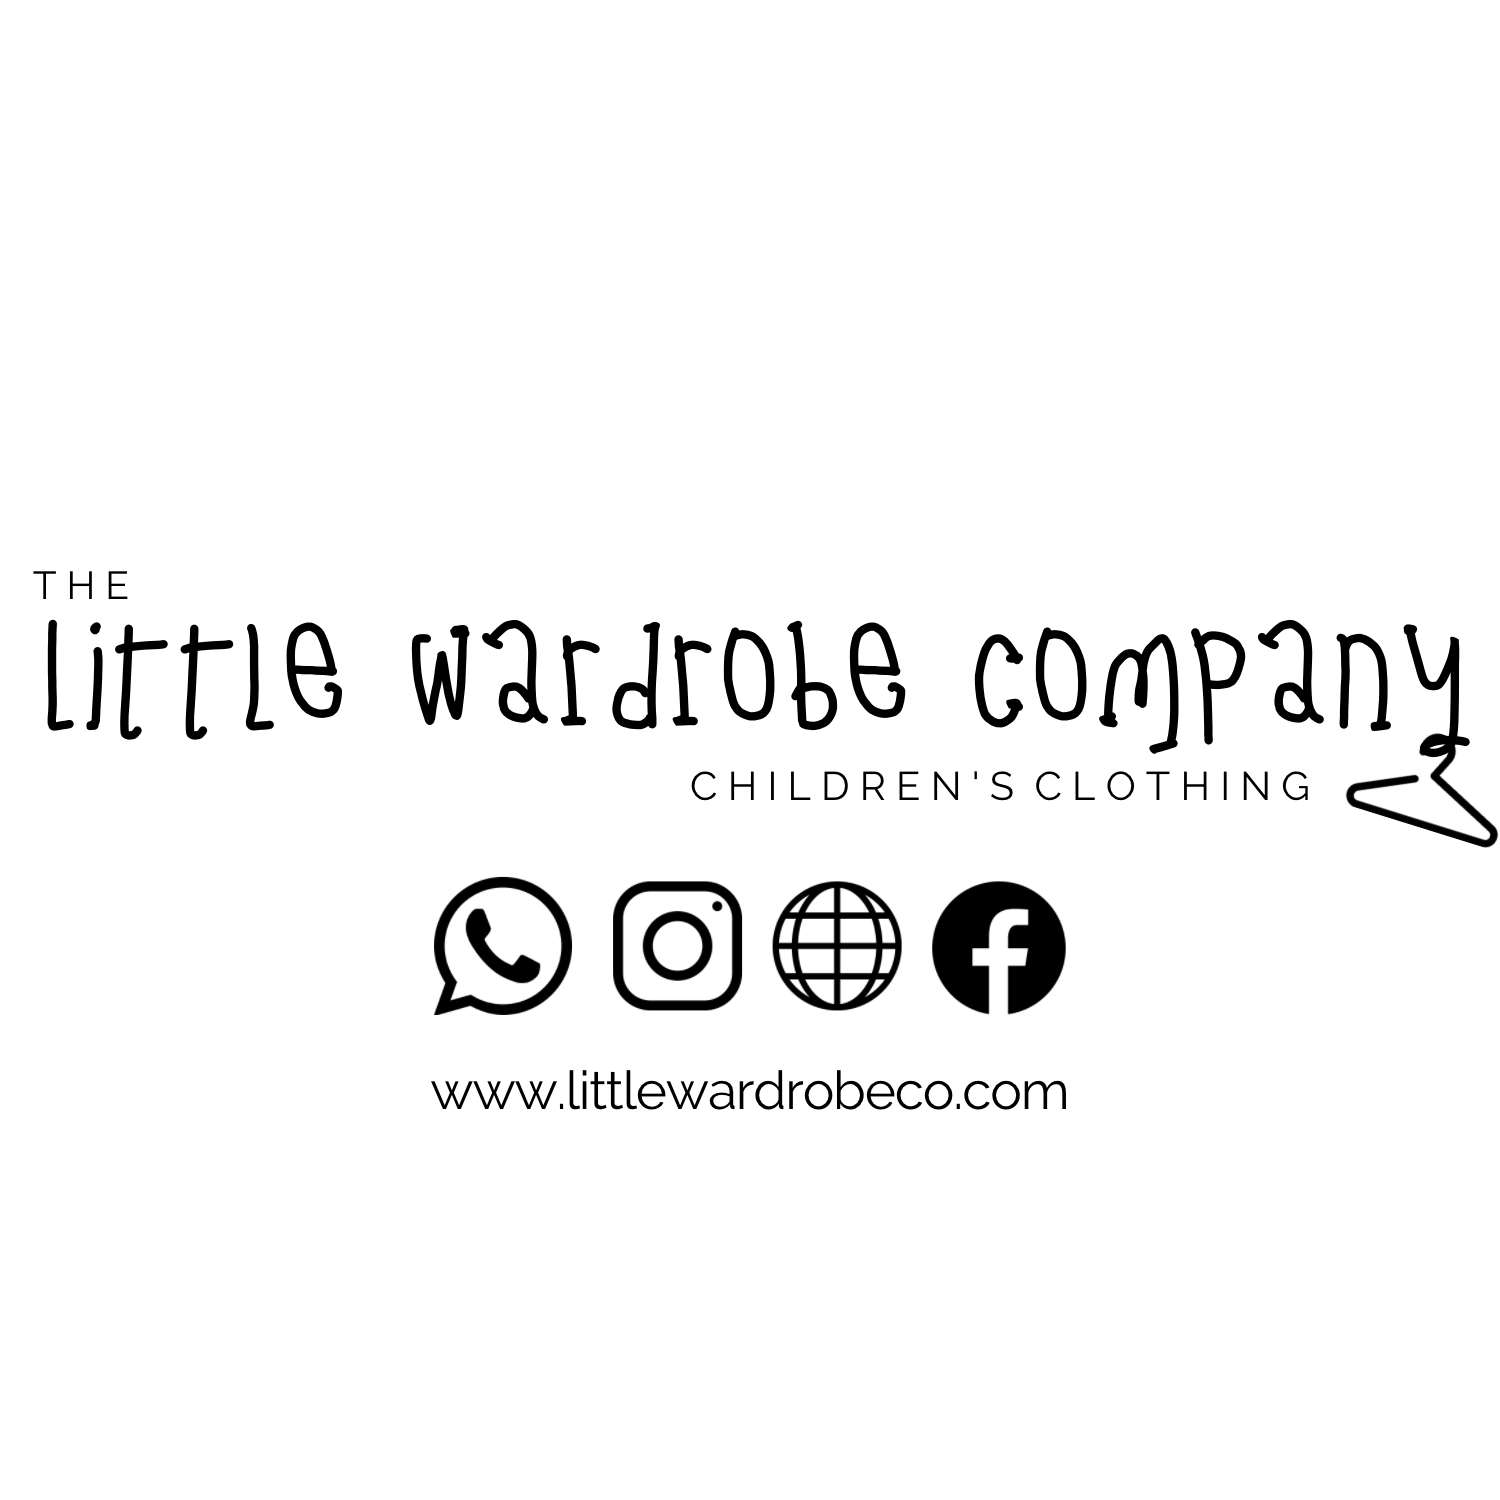 The Little Wardrobe Company's logo